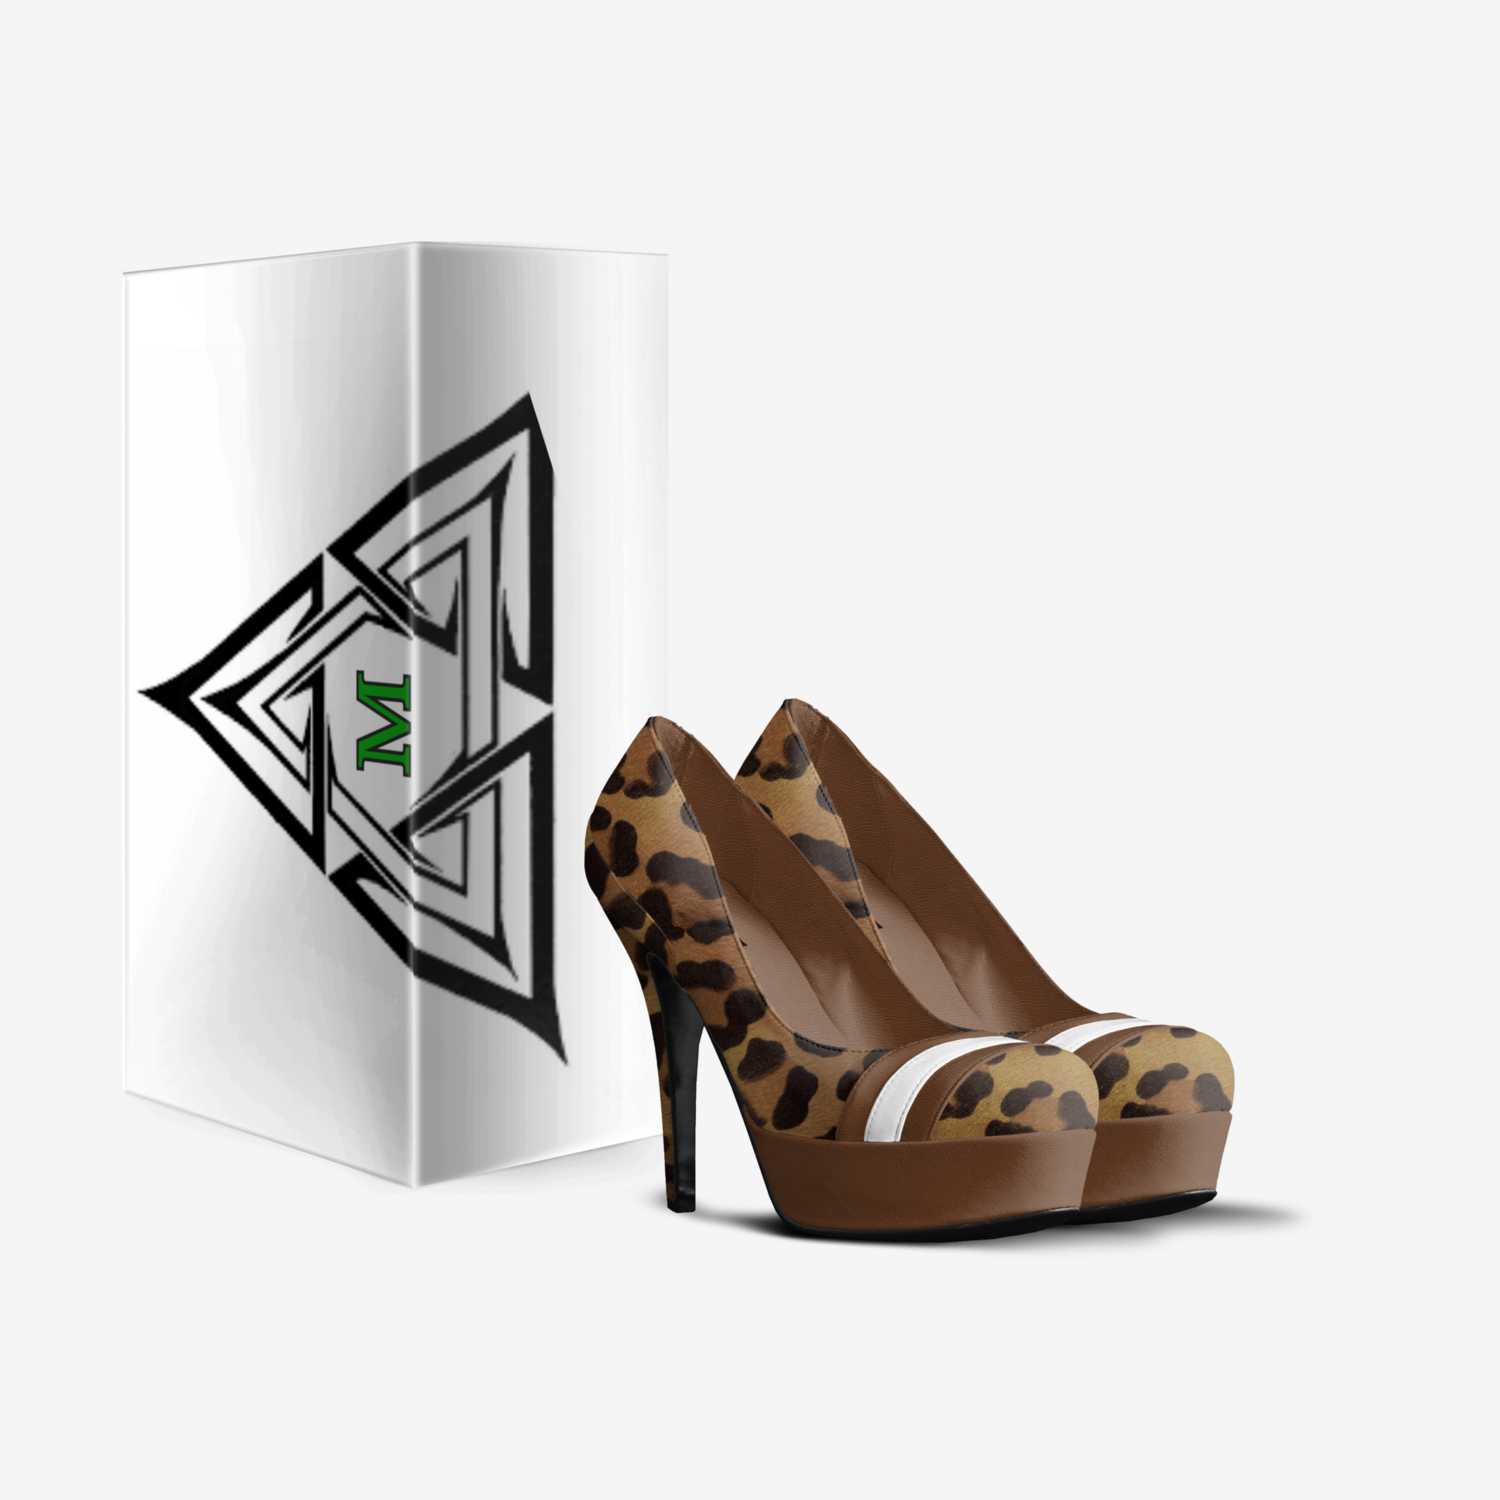 Murphnetti PH custom made in Italy shoes by Tyriek Murphy | Box view